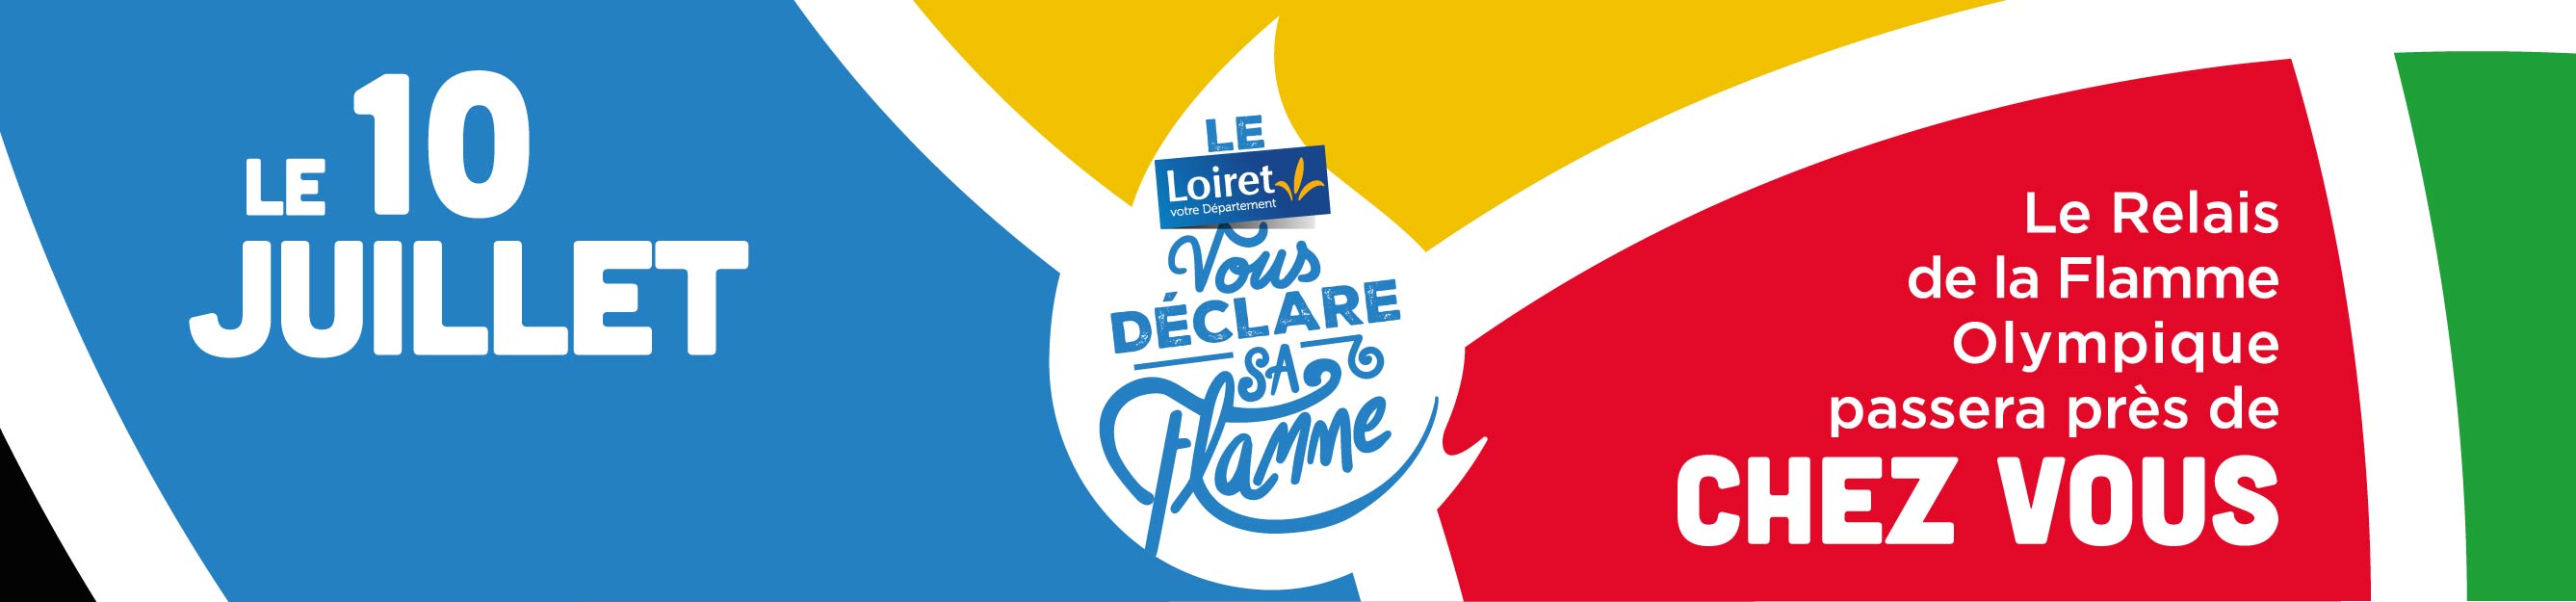 Site Relais de la Flamme Olympique Loiret 